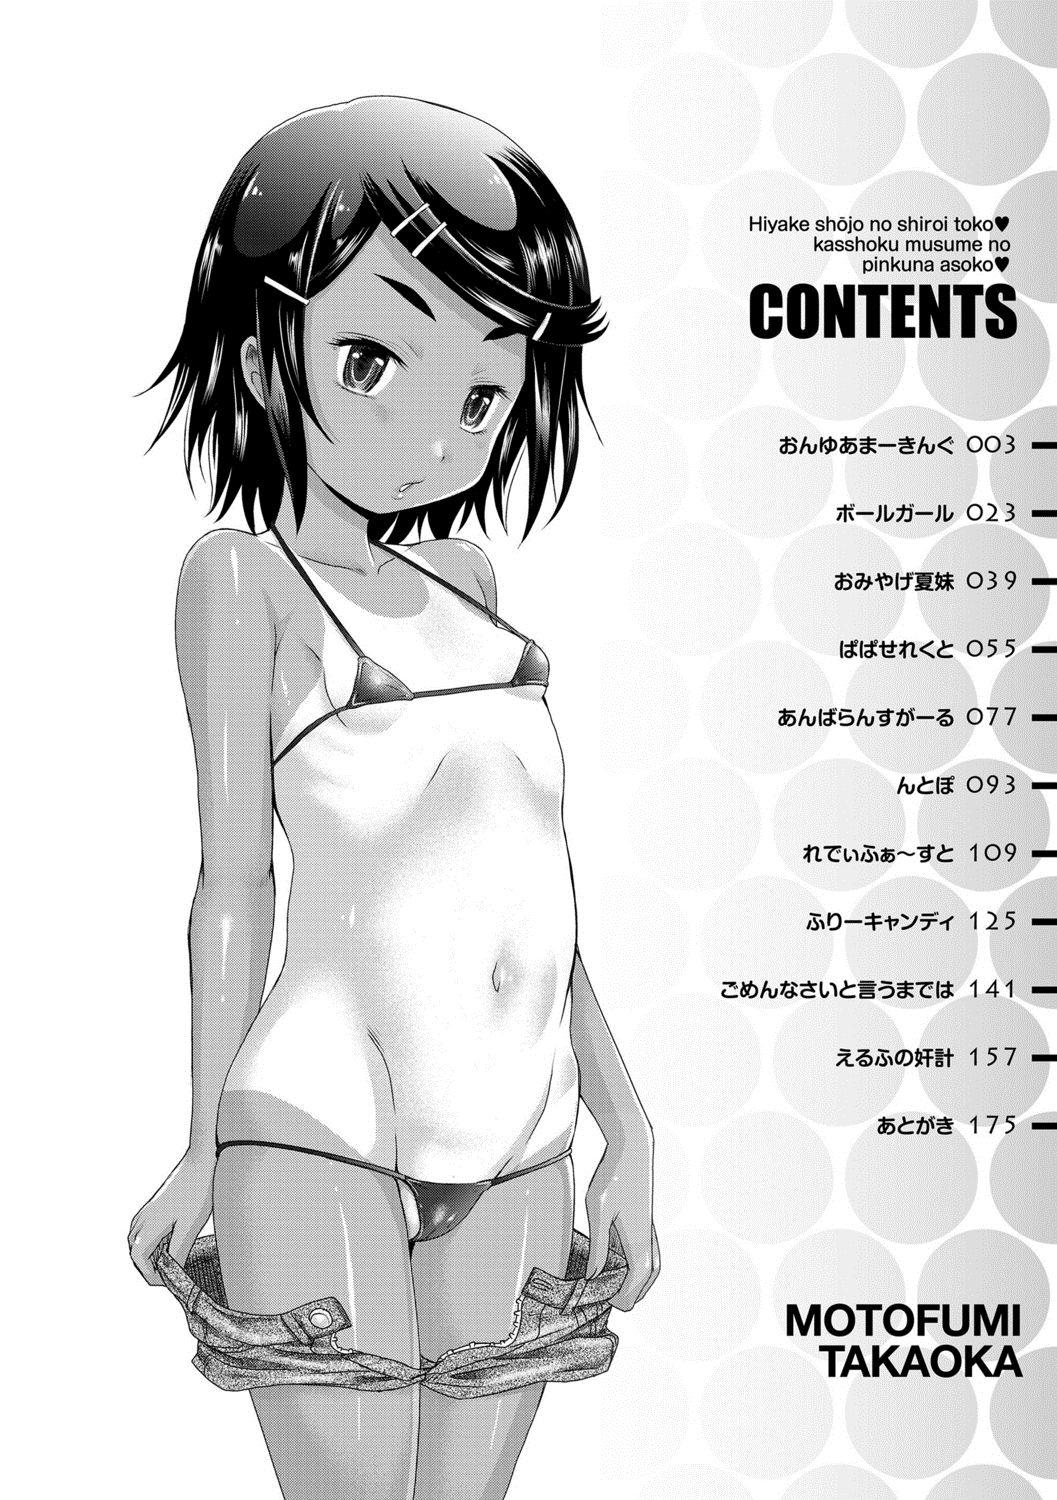 Sluts Hiyake Shoujo no Shiroi Toko Kasshoku Musume no Pinkuna Asoko Con - Page 4